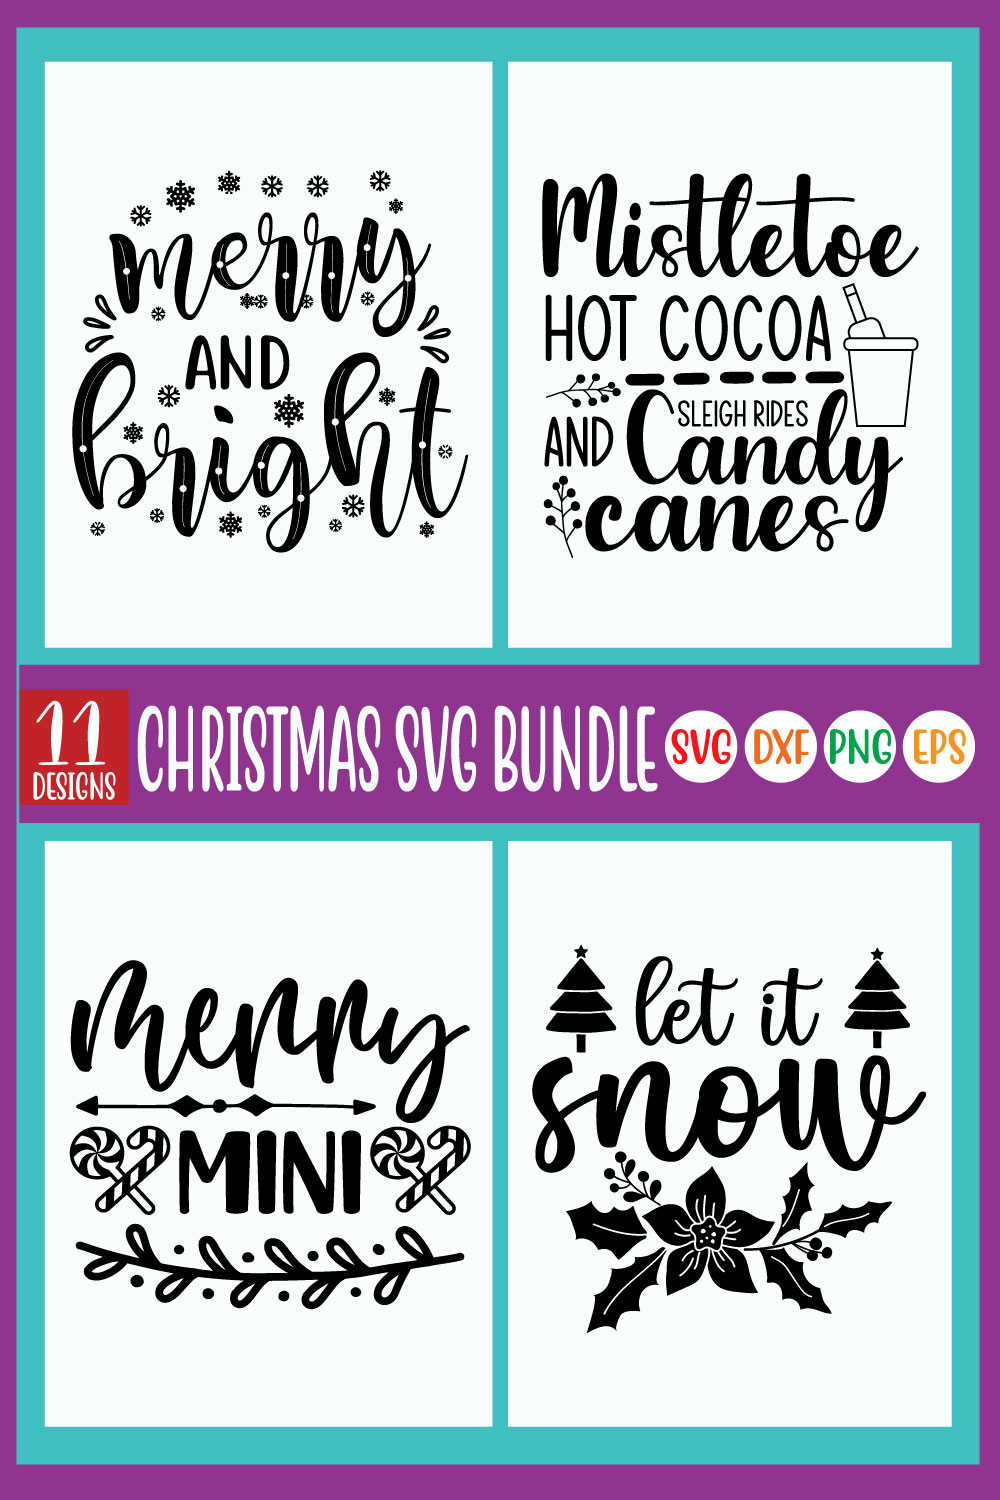 Christmas SVG Design Bundle pinterest image.